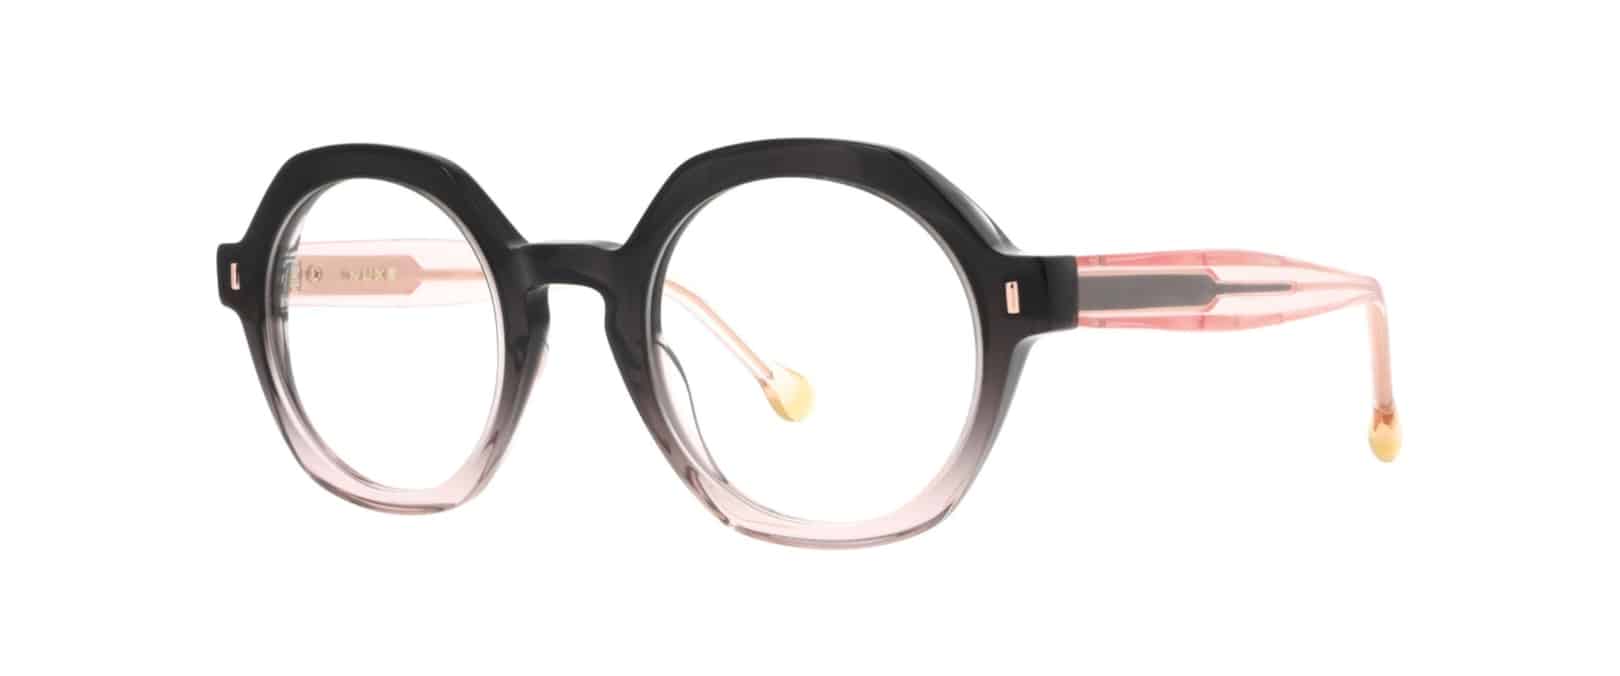 Lanctot Optical Nuxe Eyewear Tsubaki model